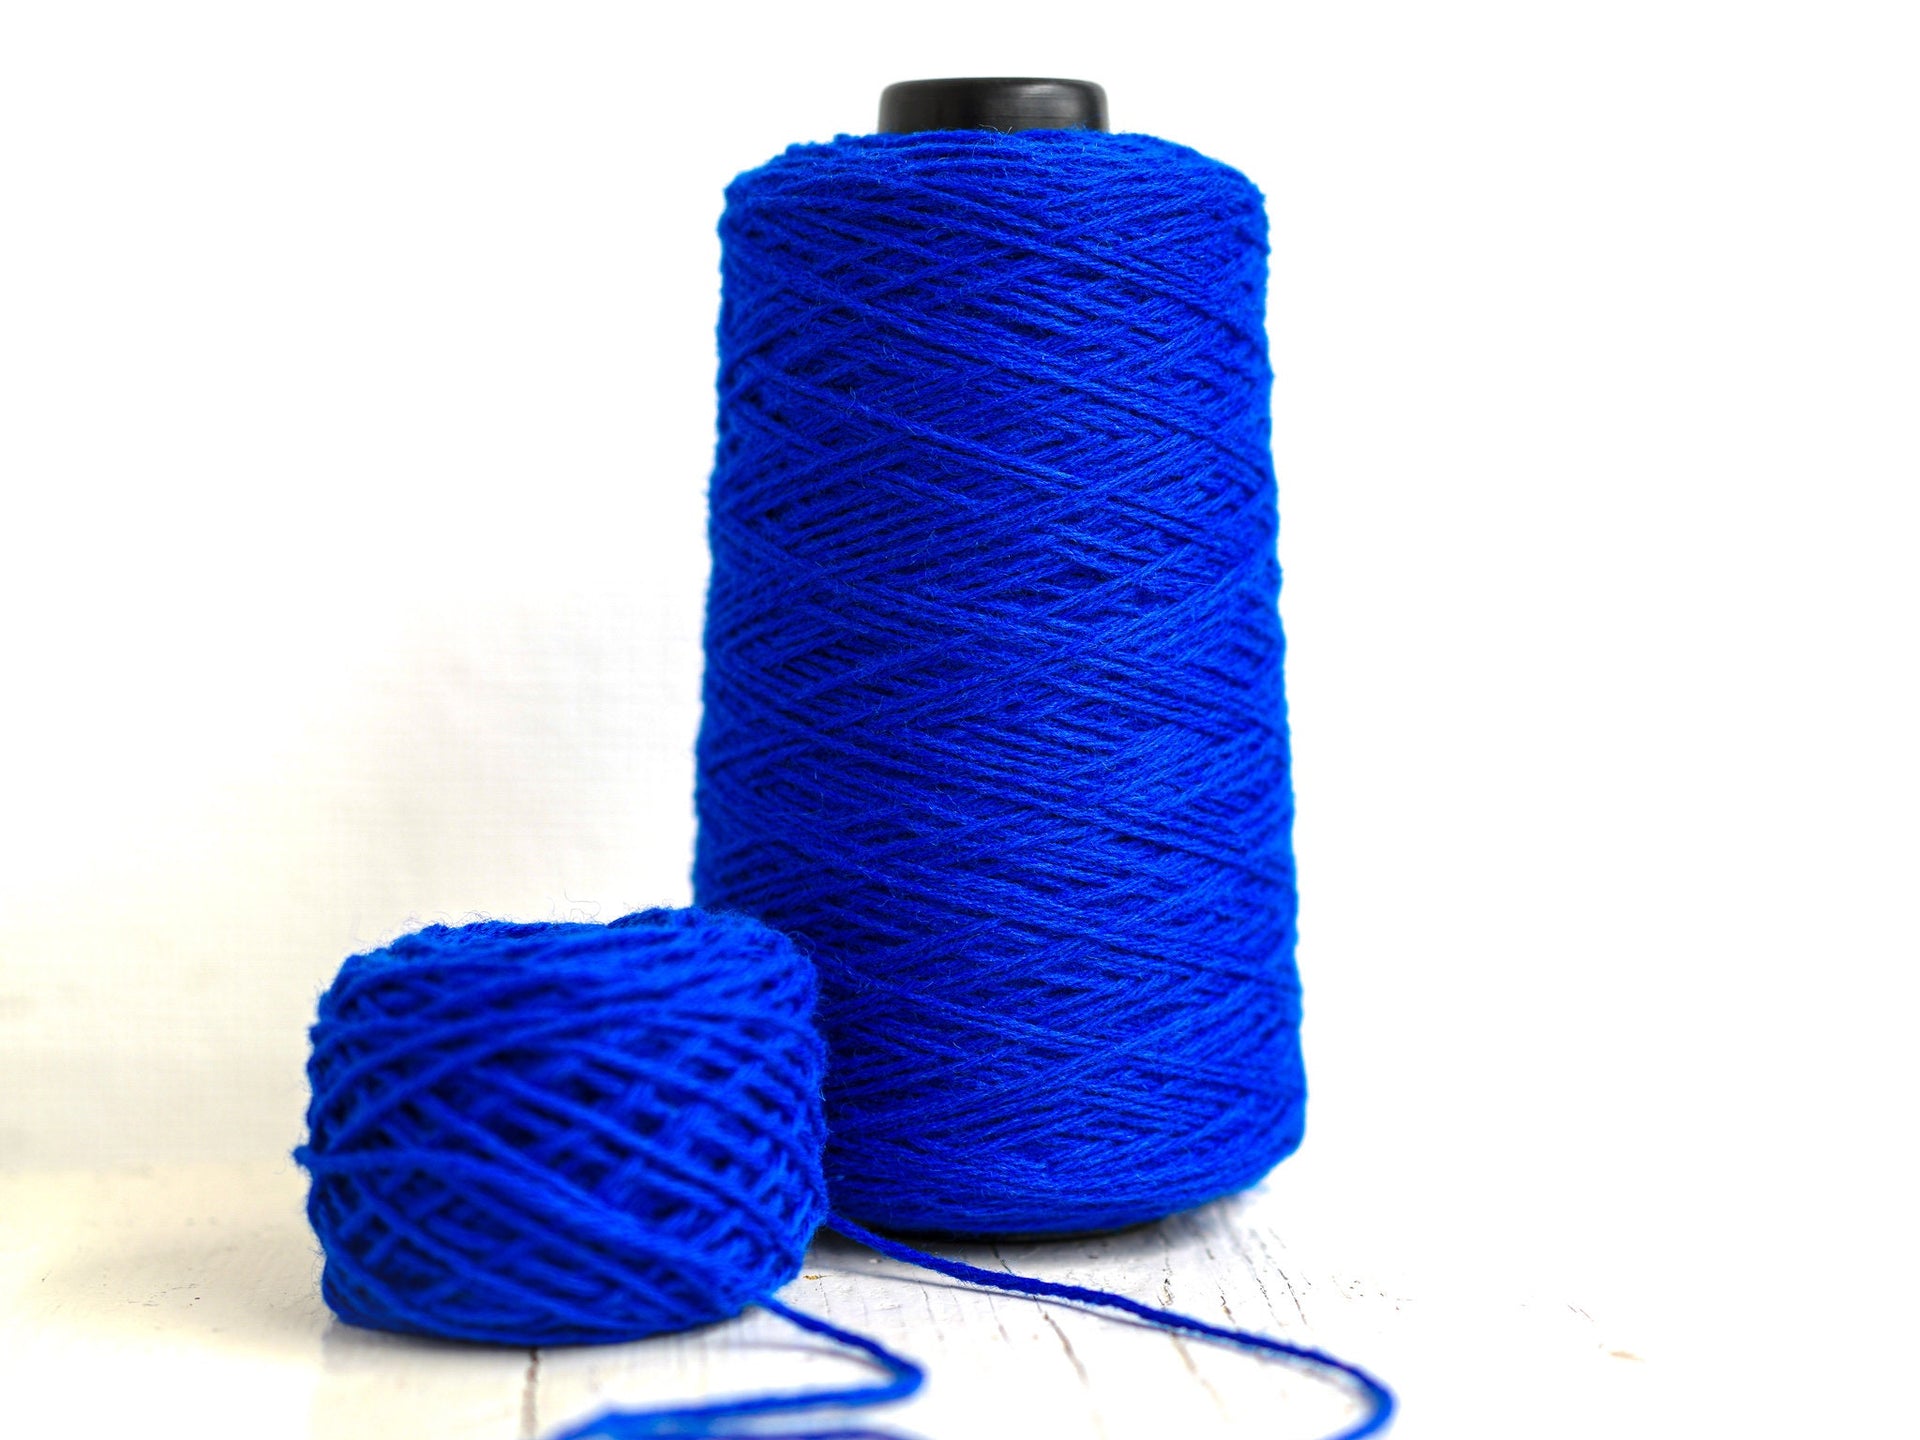 Steel blue yarn for tufting gun, Yarn for knitting